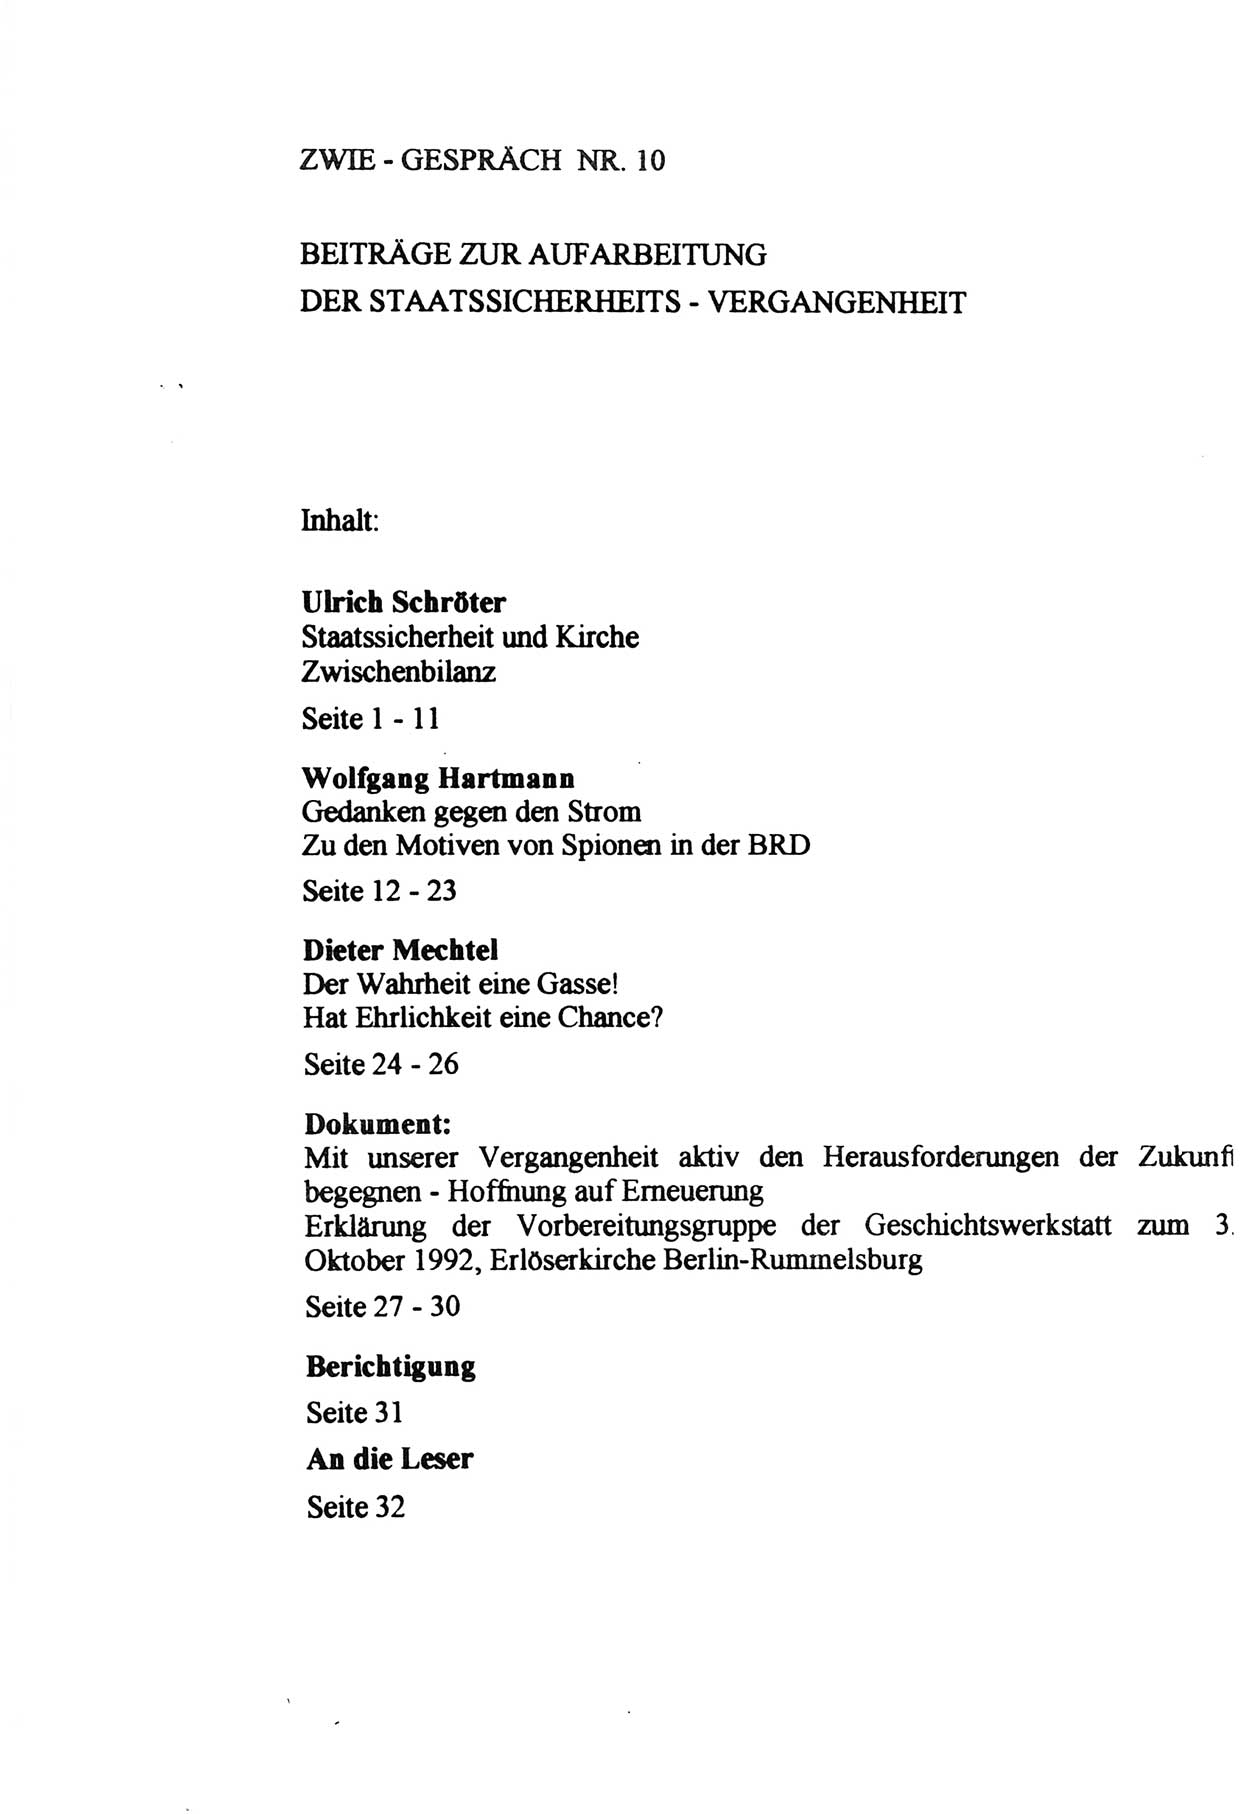 Zwie-Gespräch, Beiträge zur Aufarbeitung der Staatssicherheits-Vergangenheit [Deutsche Demokratische Republik (DDR)], Ausgabe Nr. 10, Berlin 1992, Seite 33 (Zwie-Gespr. Ausg. 10 1992, S. 33)